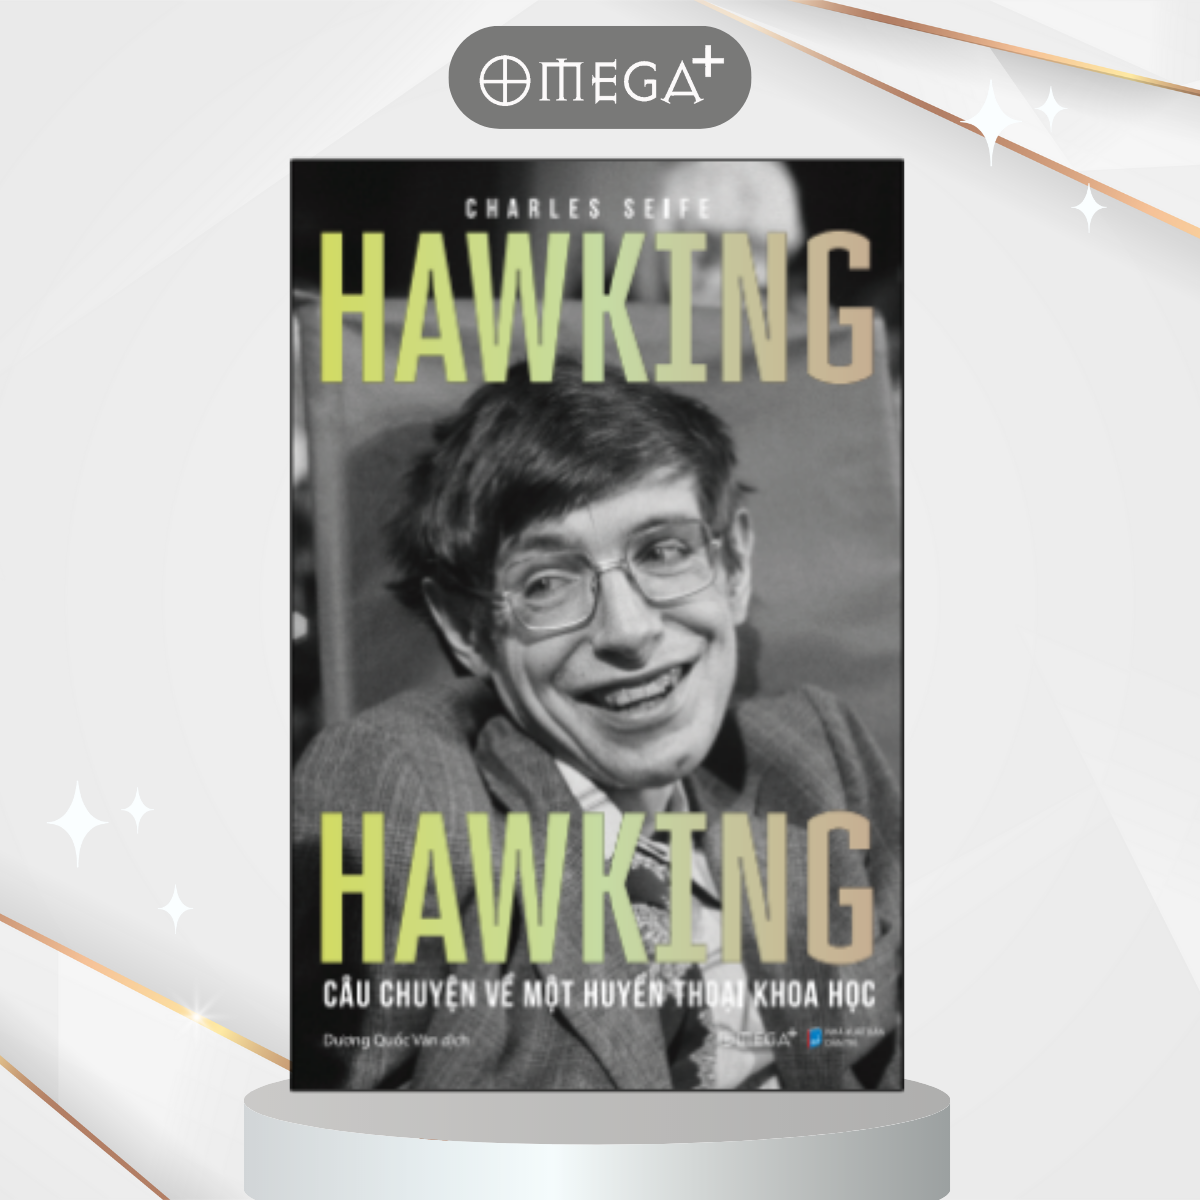 Hawking Hawking - Câu Chuyện Về Một Huyền Thoại Khoa Học (Charles Seife)